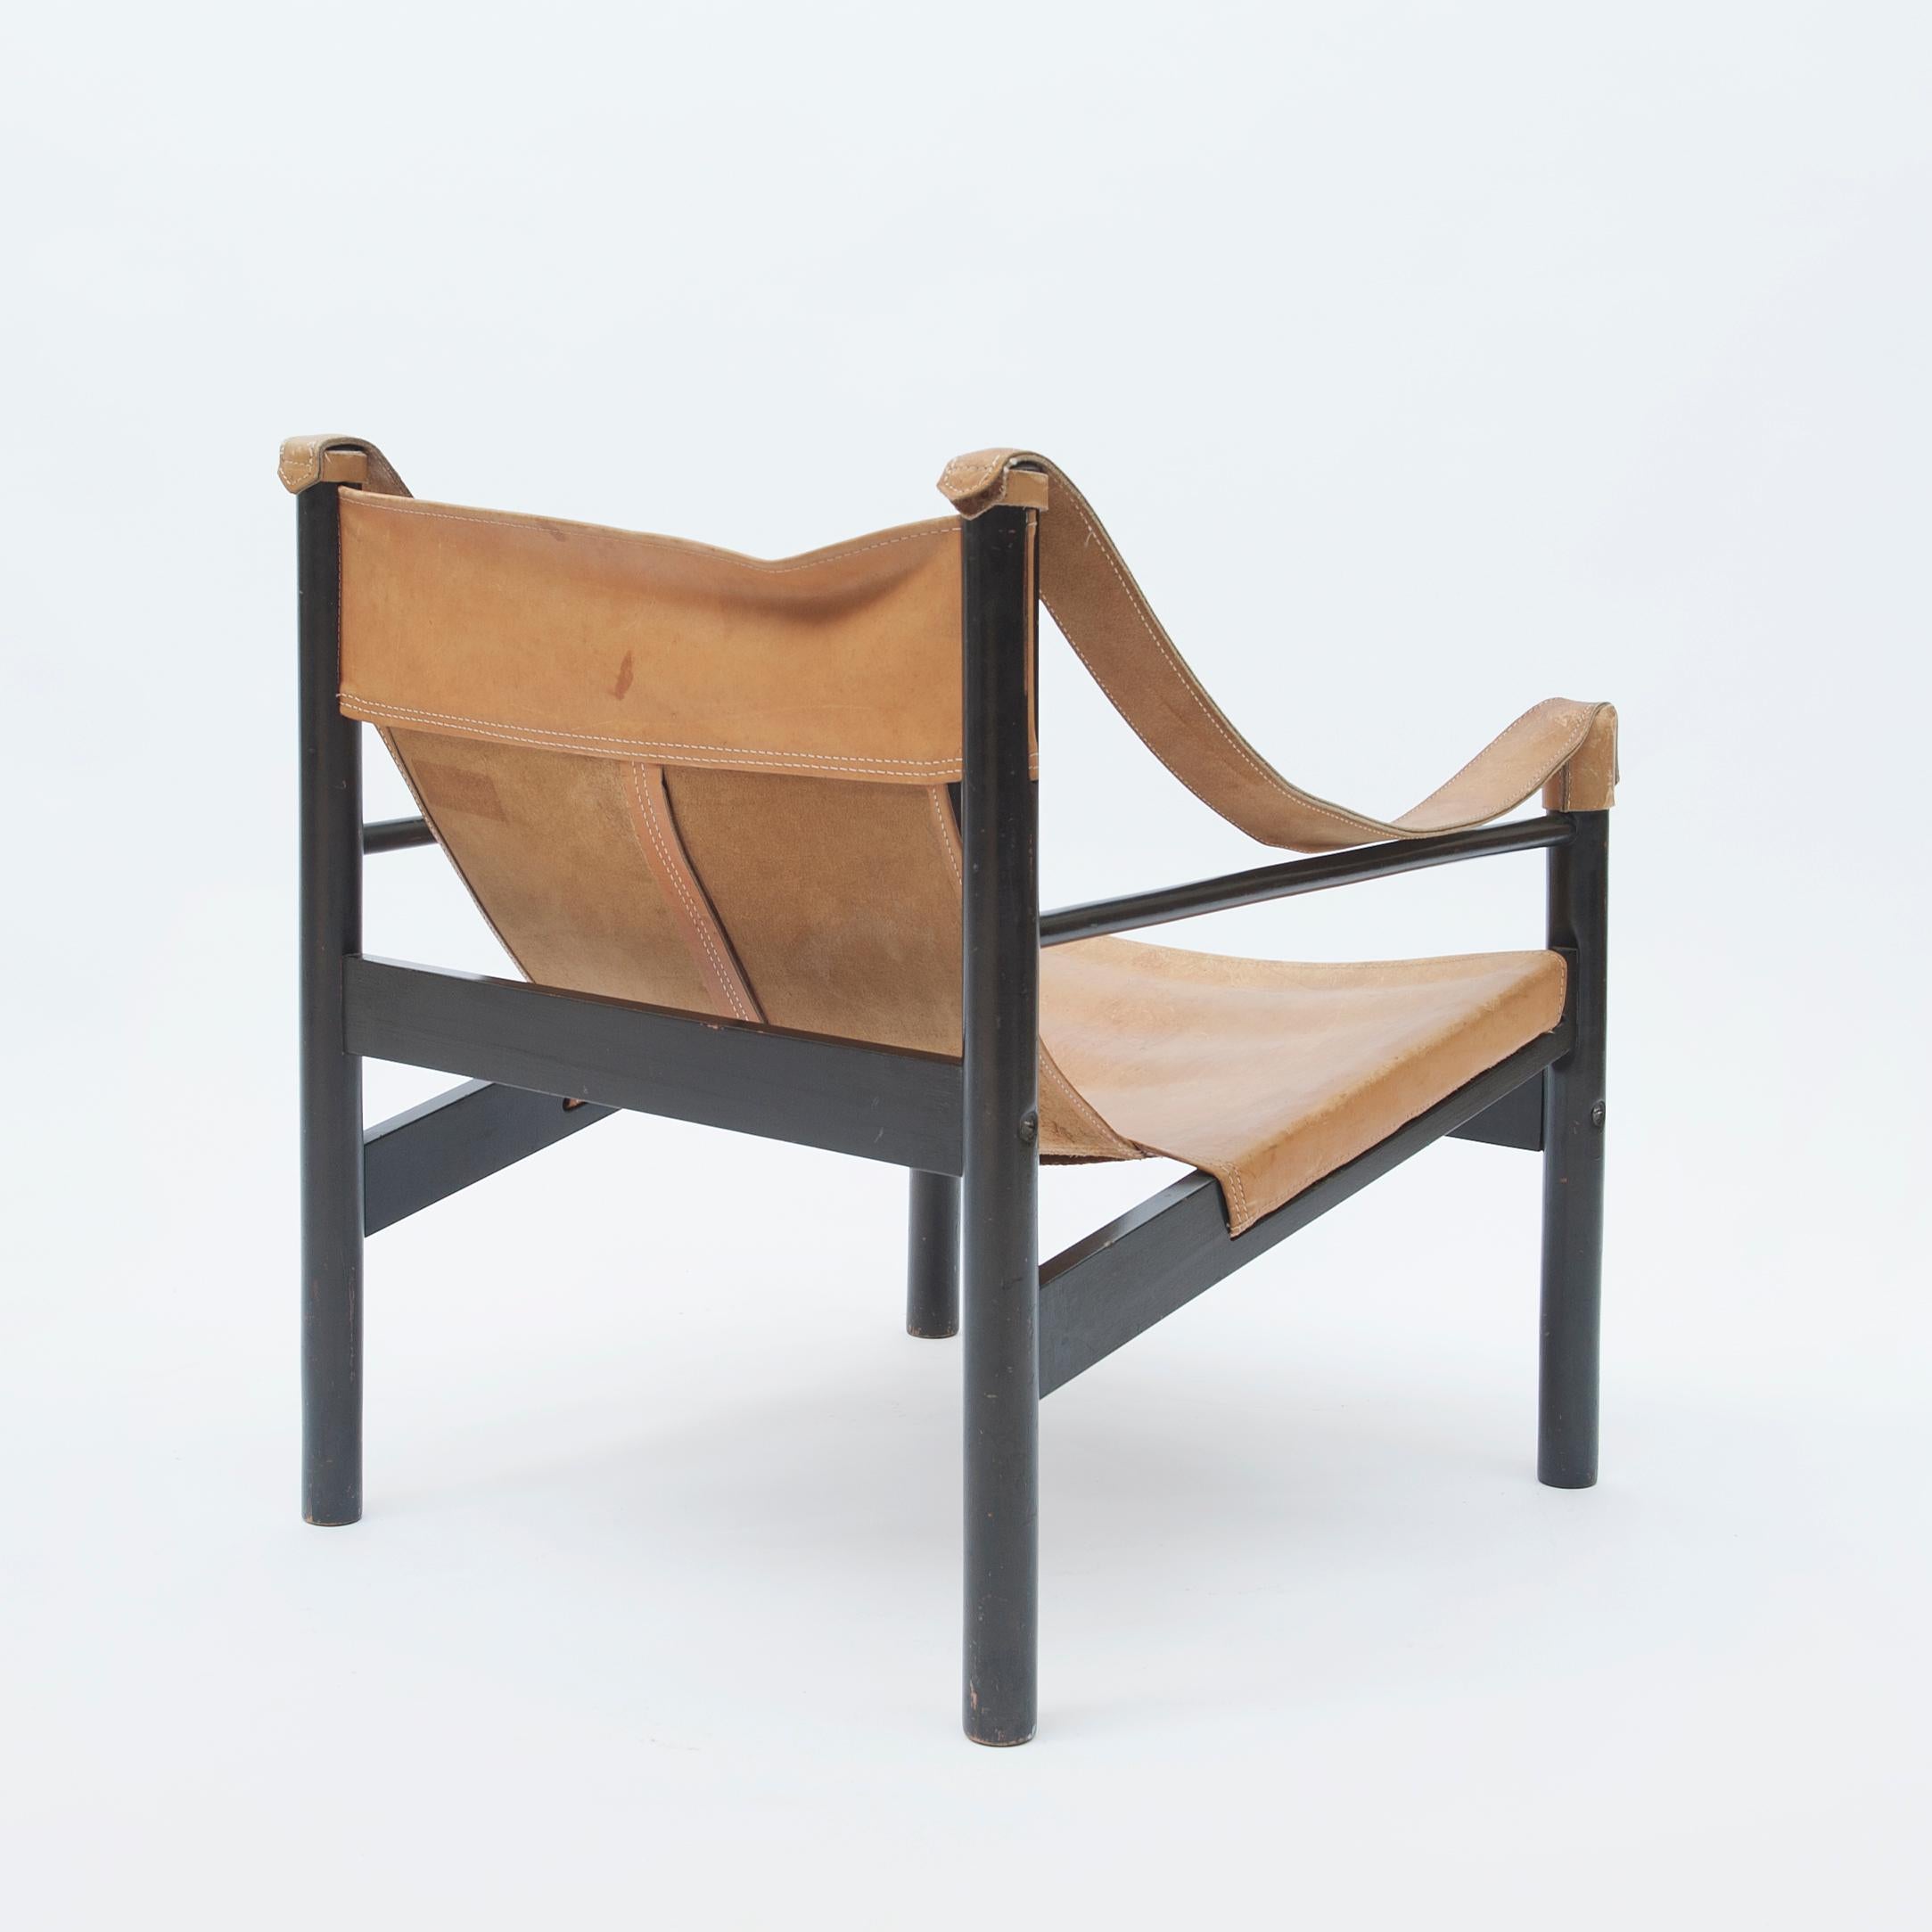 Safari-Sessel von Abel Gonzalez, Argentinien, 1960er Jahre (Leder)